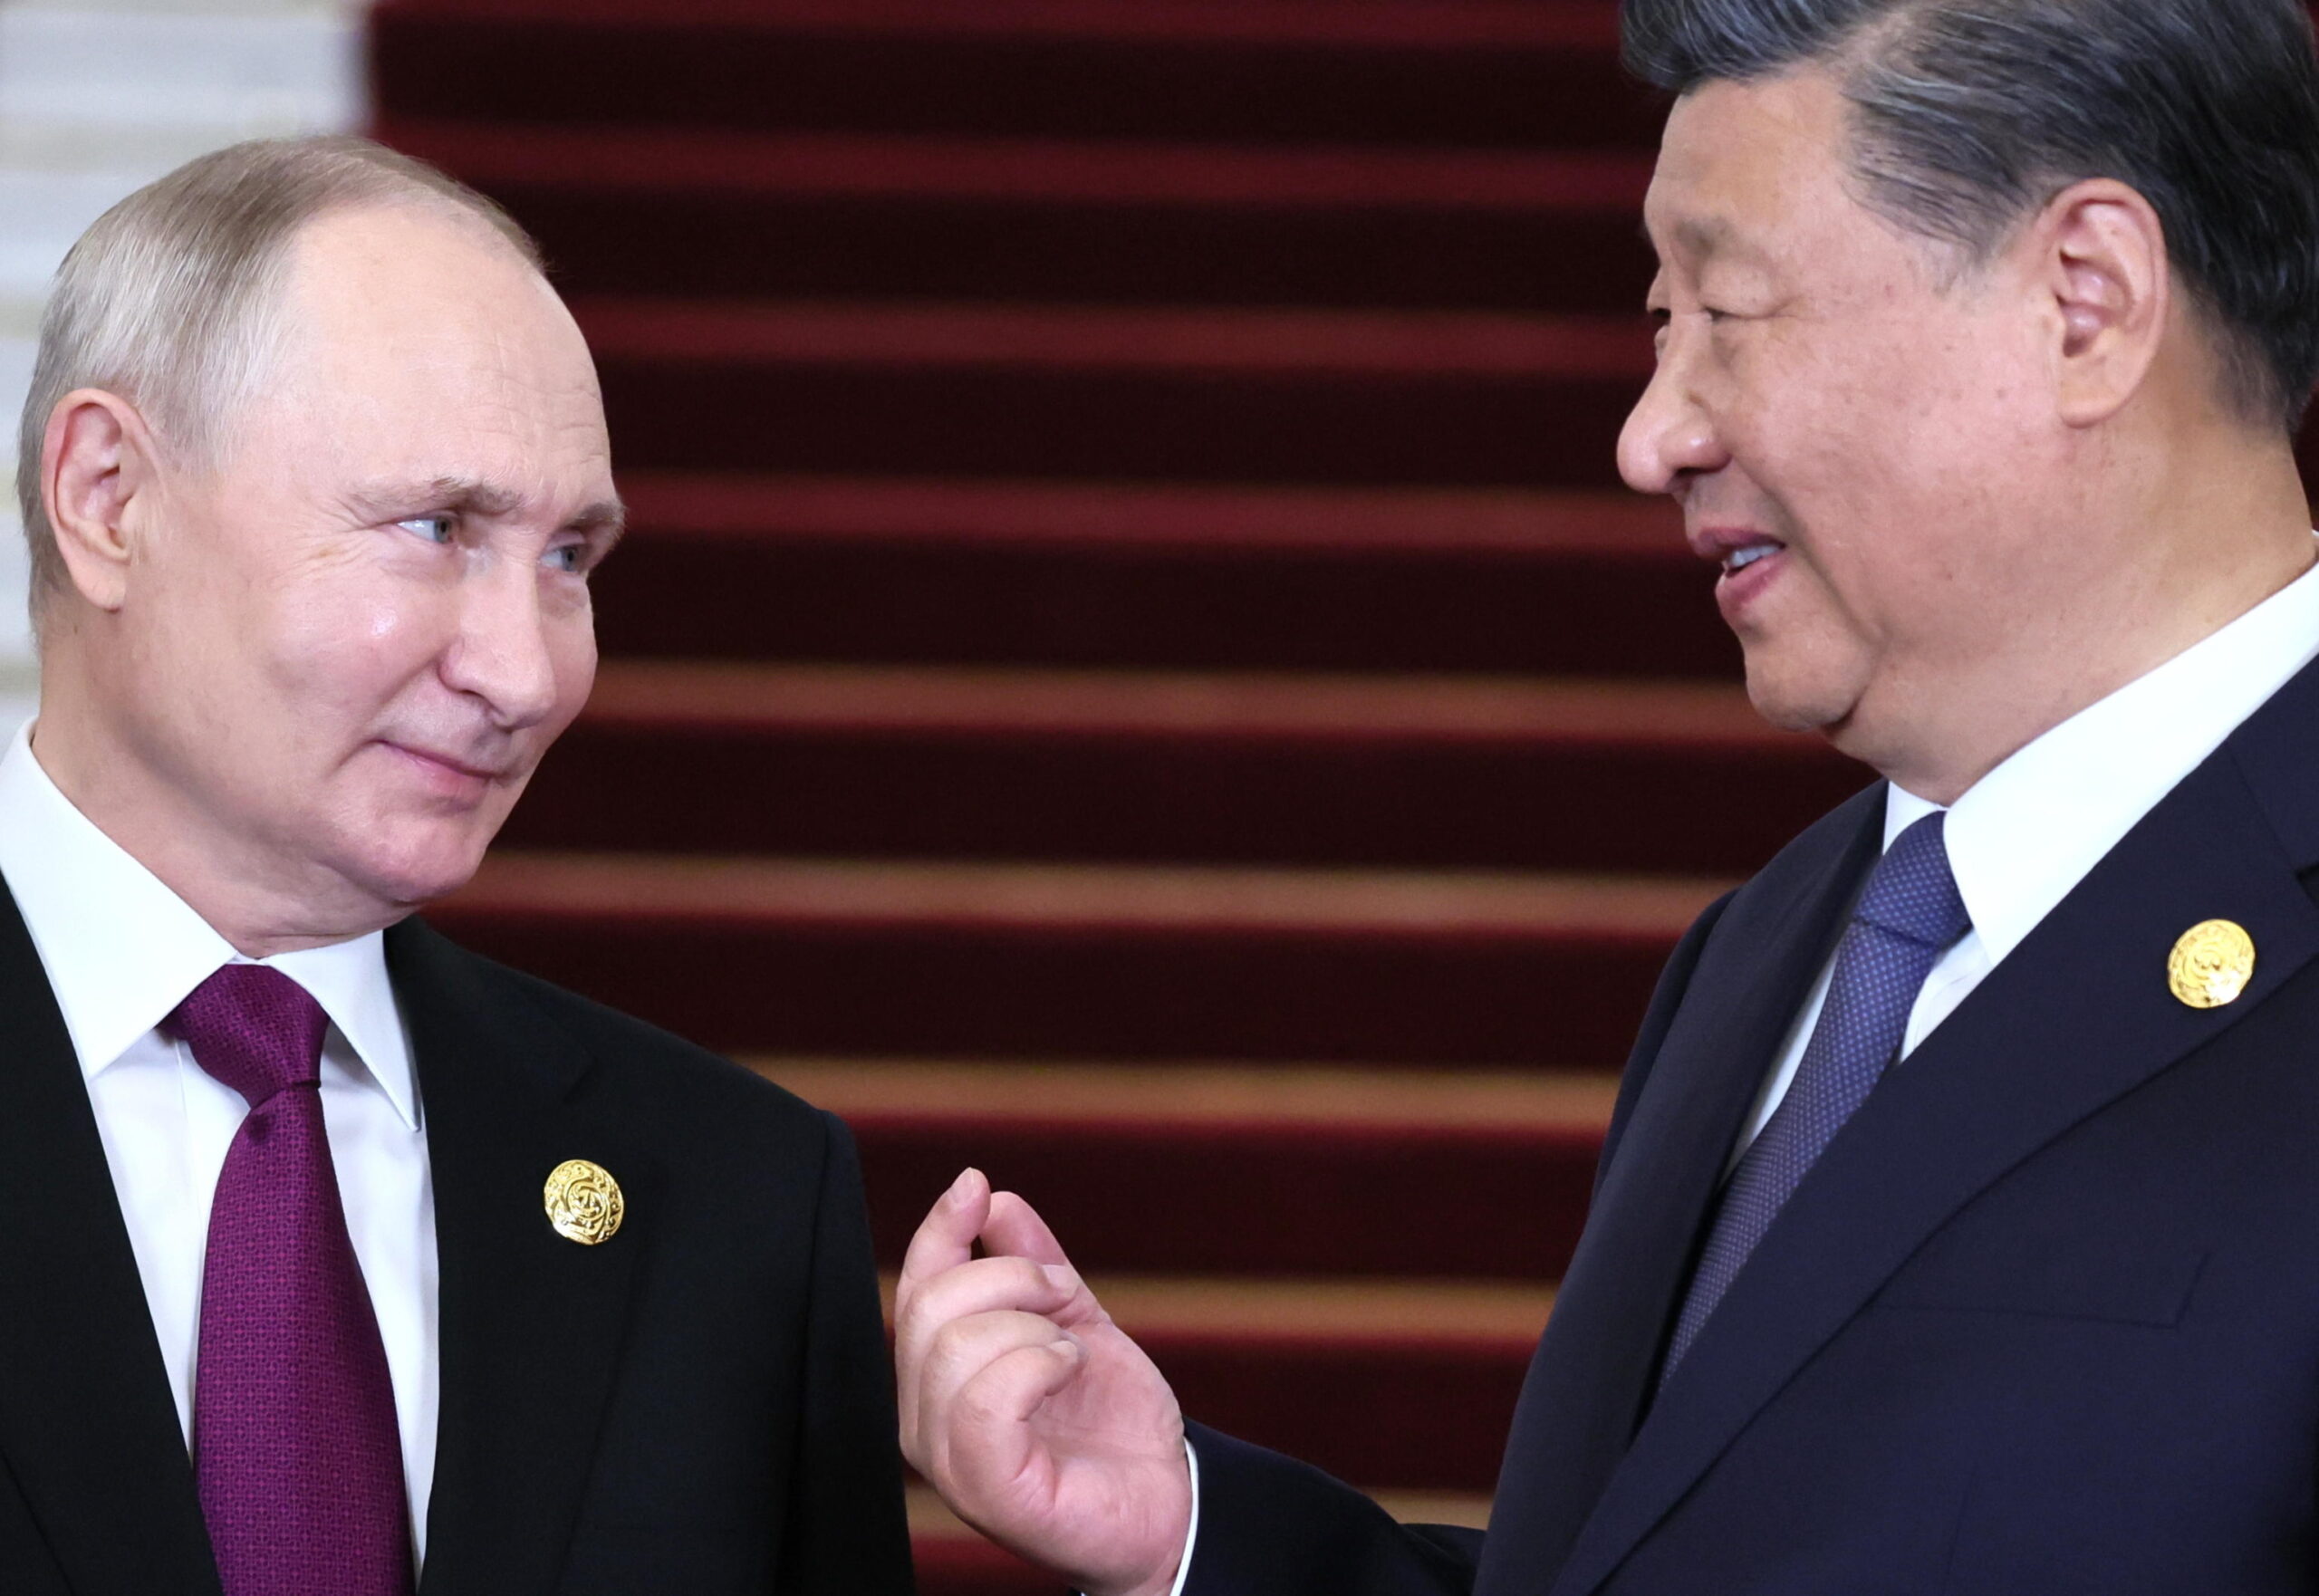 Putin accolto in Cina dall’amico Xi. Orban “legame con Ue”